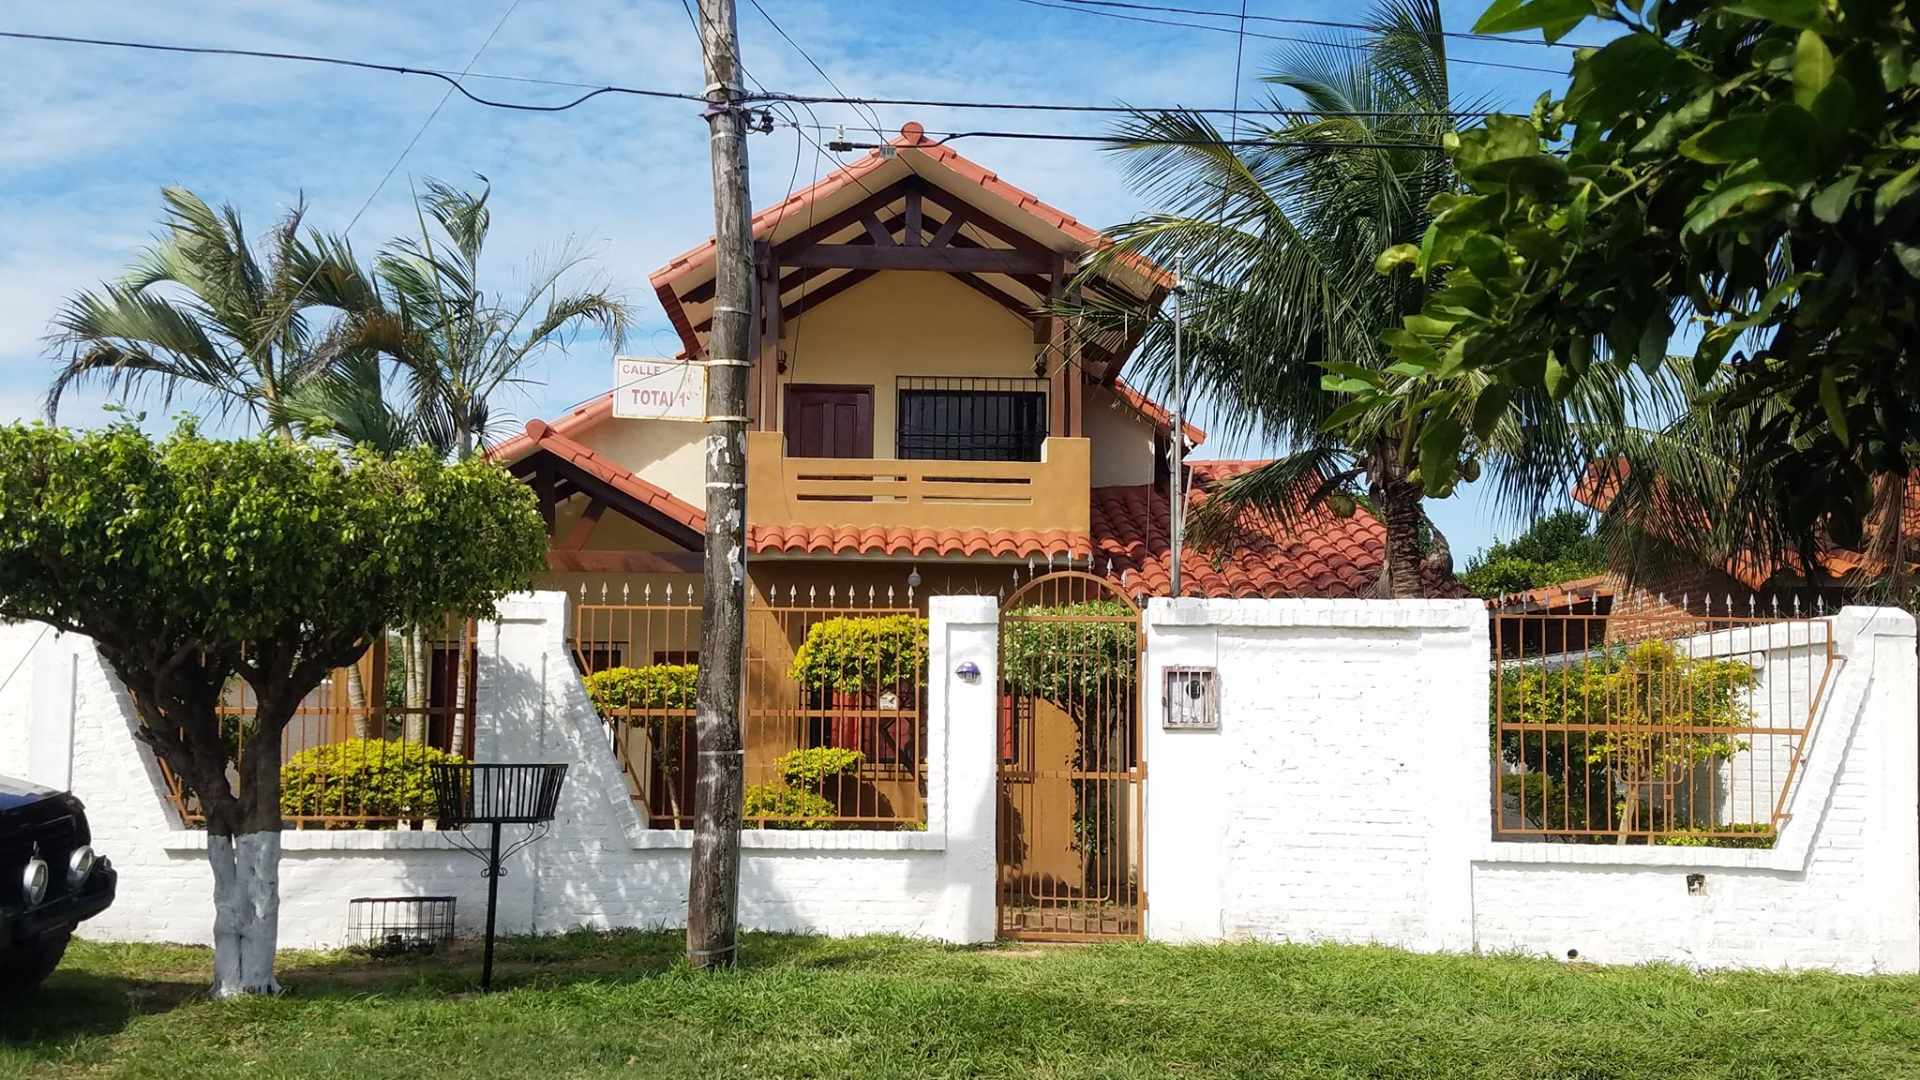 Casa en Venta♦ $us. 99.000.-AMPLIA Y LINDA CASA EN VENTA – ZONA LOS CHACOS - 6TO ANILLO❗ ❗  Foto 3